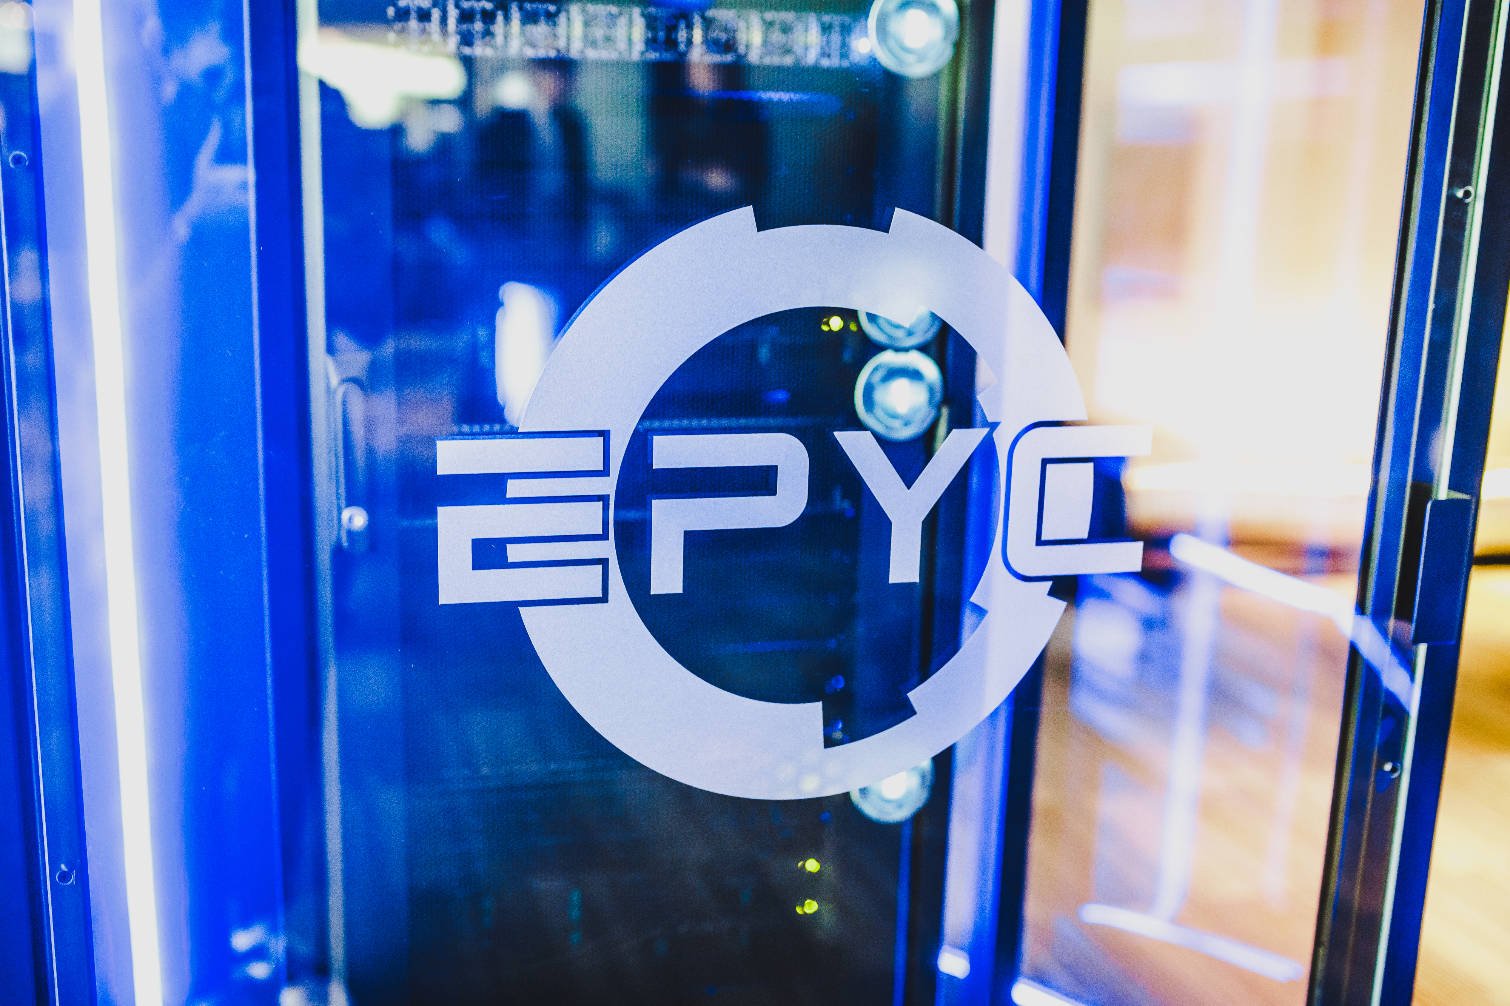 Immagine di CPU AMD EPYC per tenere a bada le testate nucleari britanniche